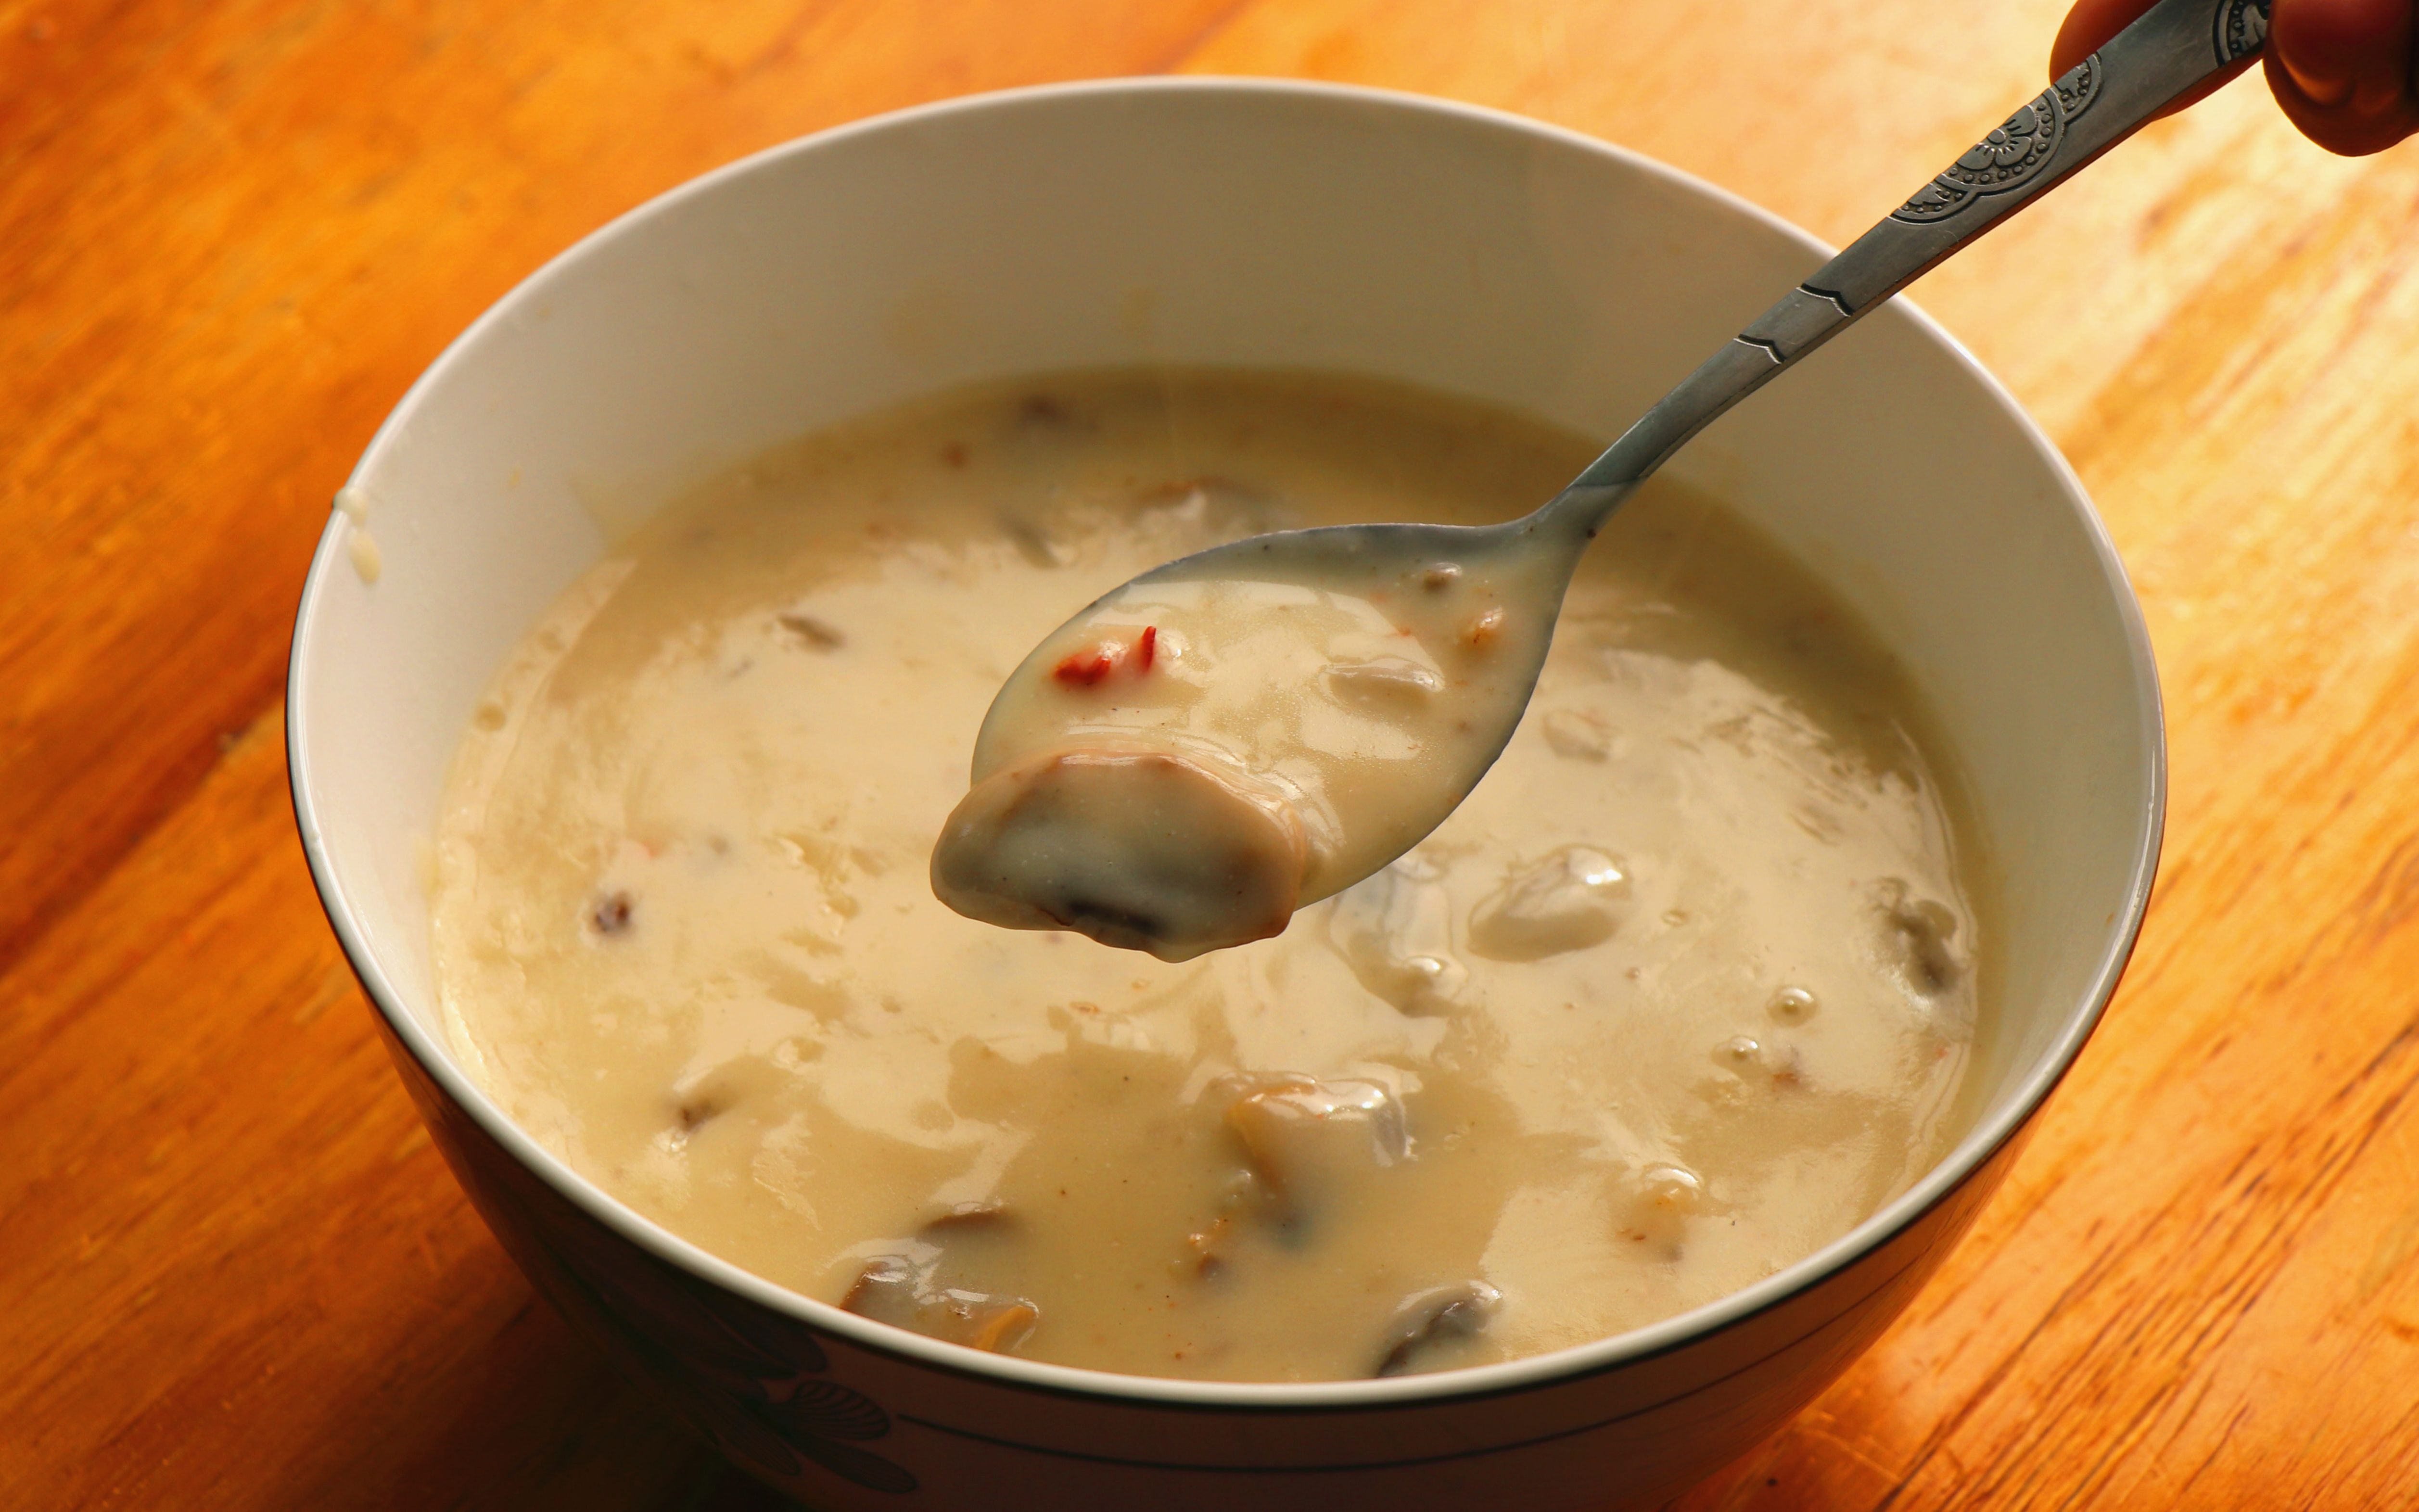 奶油蘑菇汤】教你 在家做奶油蘑菇汤,甜咸交错,奶香浓郁,喝上一口